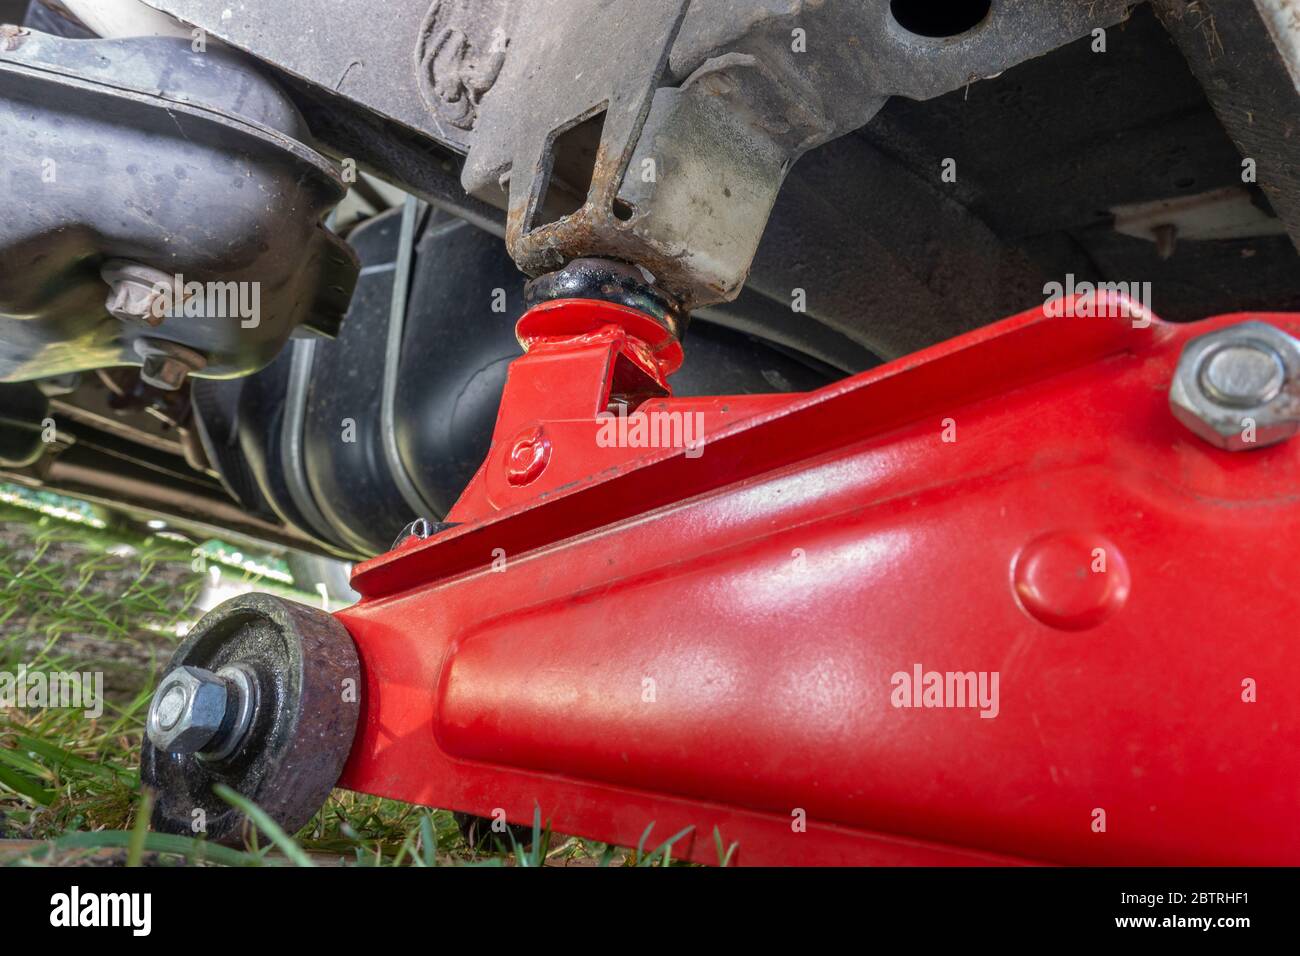 POV-Aufnahme eines schweren hydraulischen Wagenhebers/Wagenhebers auf dem Boden unter einem Van, verbunden mit einem Hebepunkt, mit dem Fahrzeug angehoben. Stockfoto